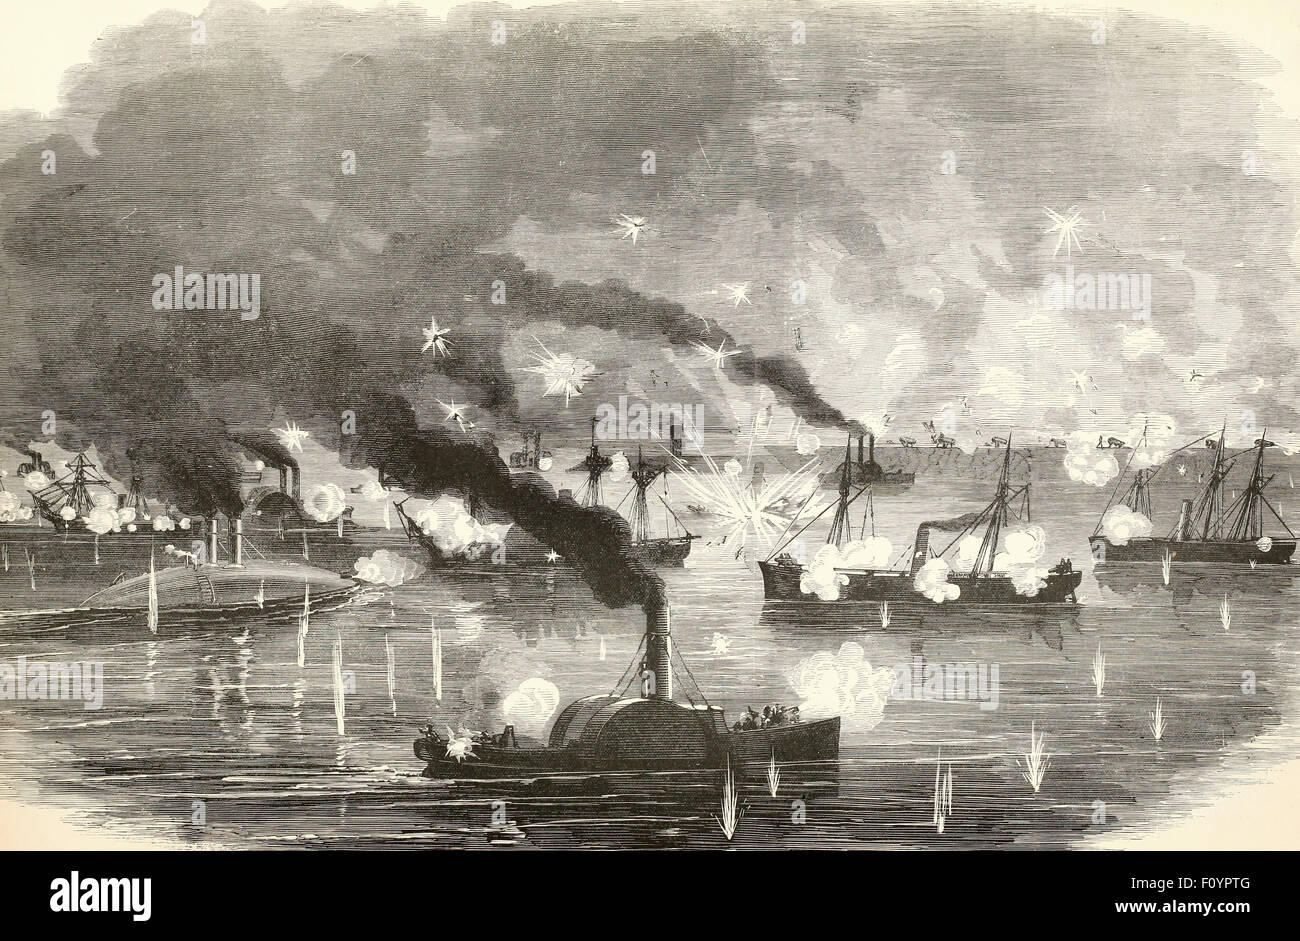 La grande bataille navale de la Mississippi - Passage de la Deuxième Division de l'administration fédérale depuis l'Escadron Fort Saint Phillip, 24 avril 1863 Guerre civile USA Banque D'Images